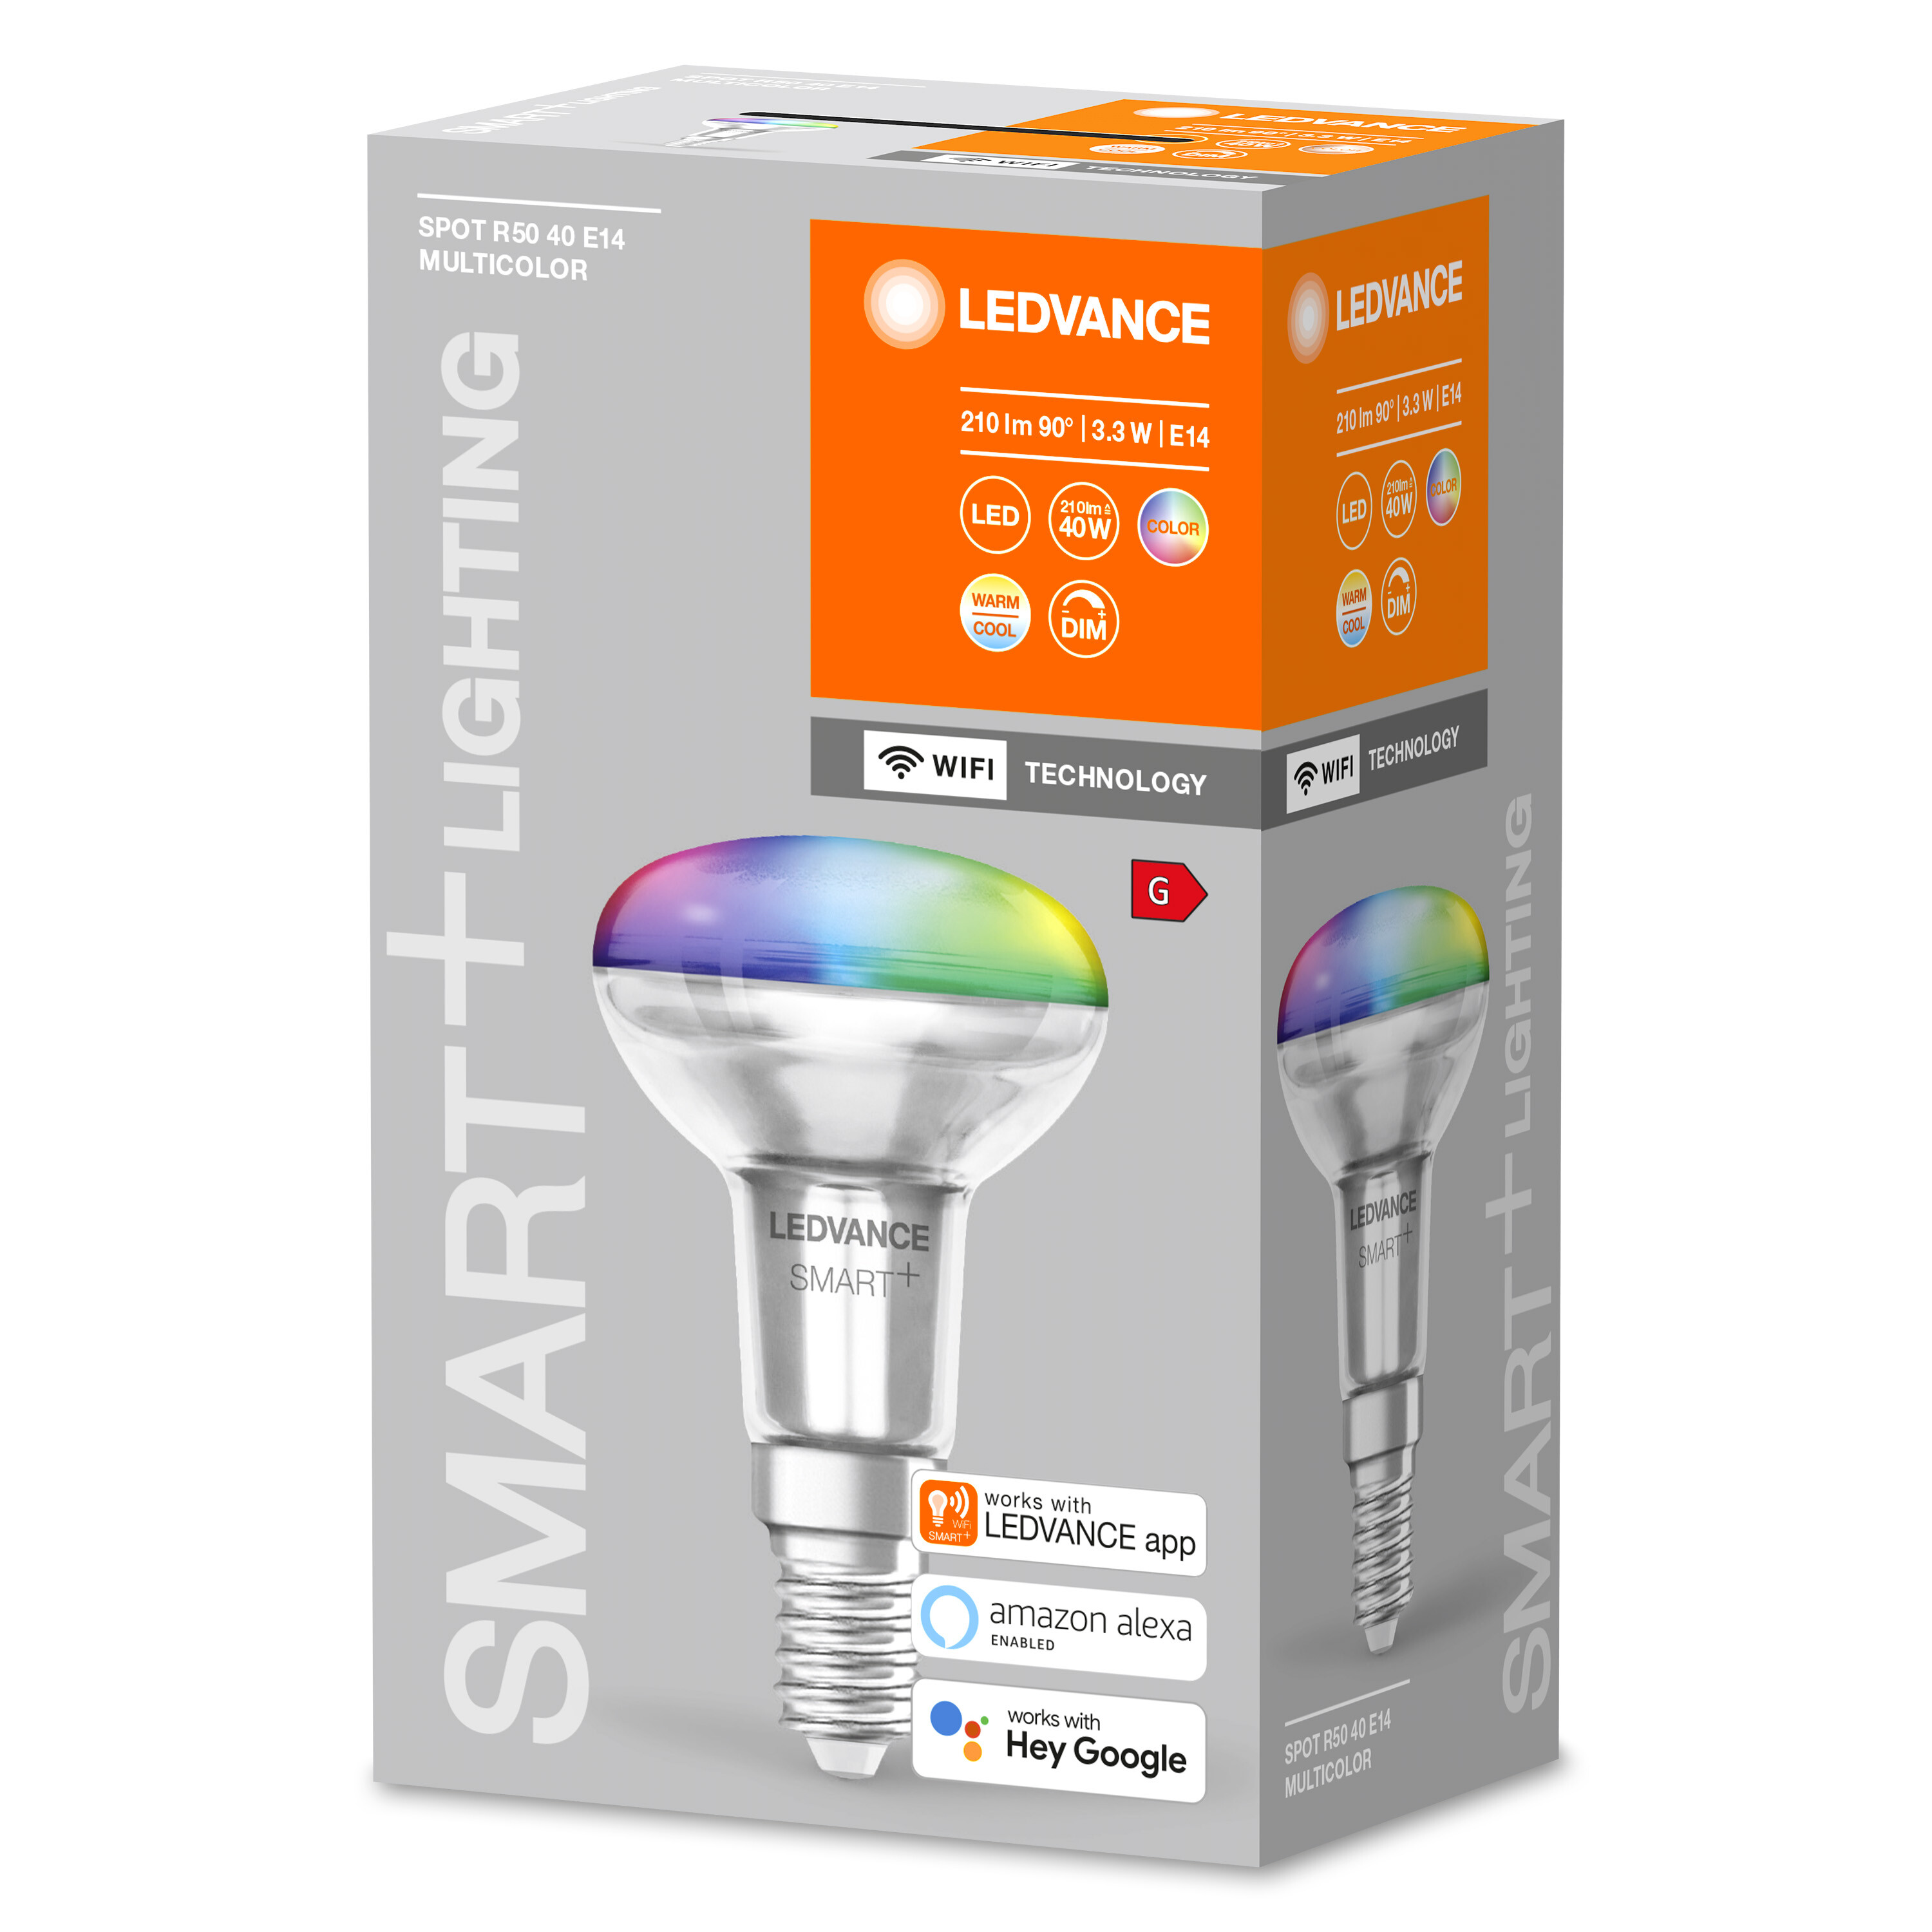 LEDVANCE SMART+ SPOT Multicolor 40 Lampe Multicolor E14 CONCENTRA R50 Lichtfarbe LED änderbar 3W